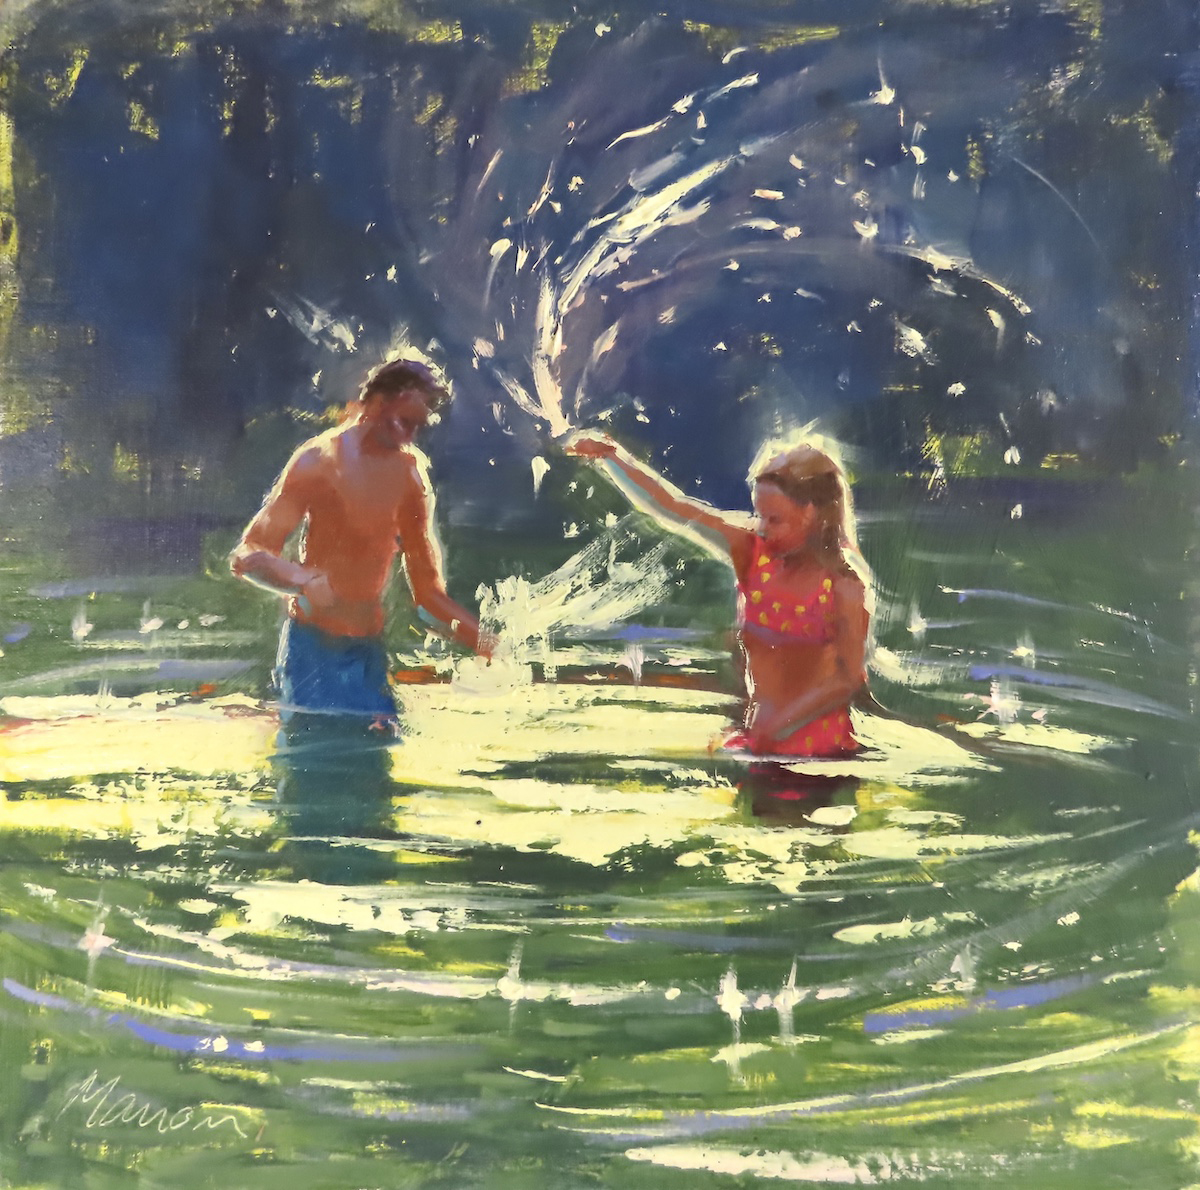 oil painting of people splashing in water